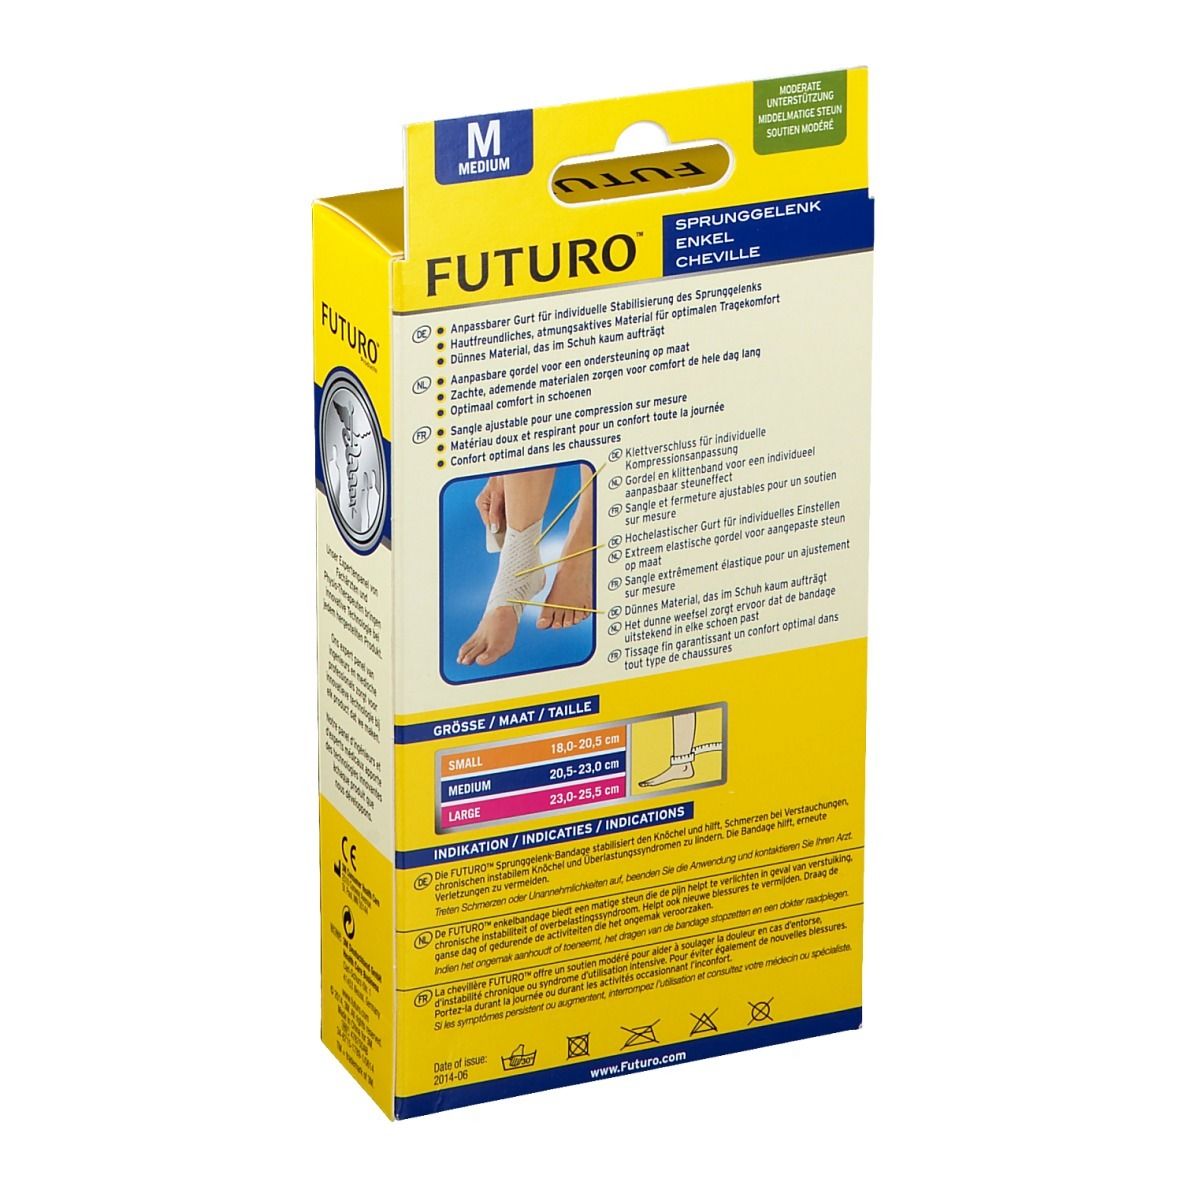 FUTURO™ Sprunggelenk-Bandage M